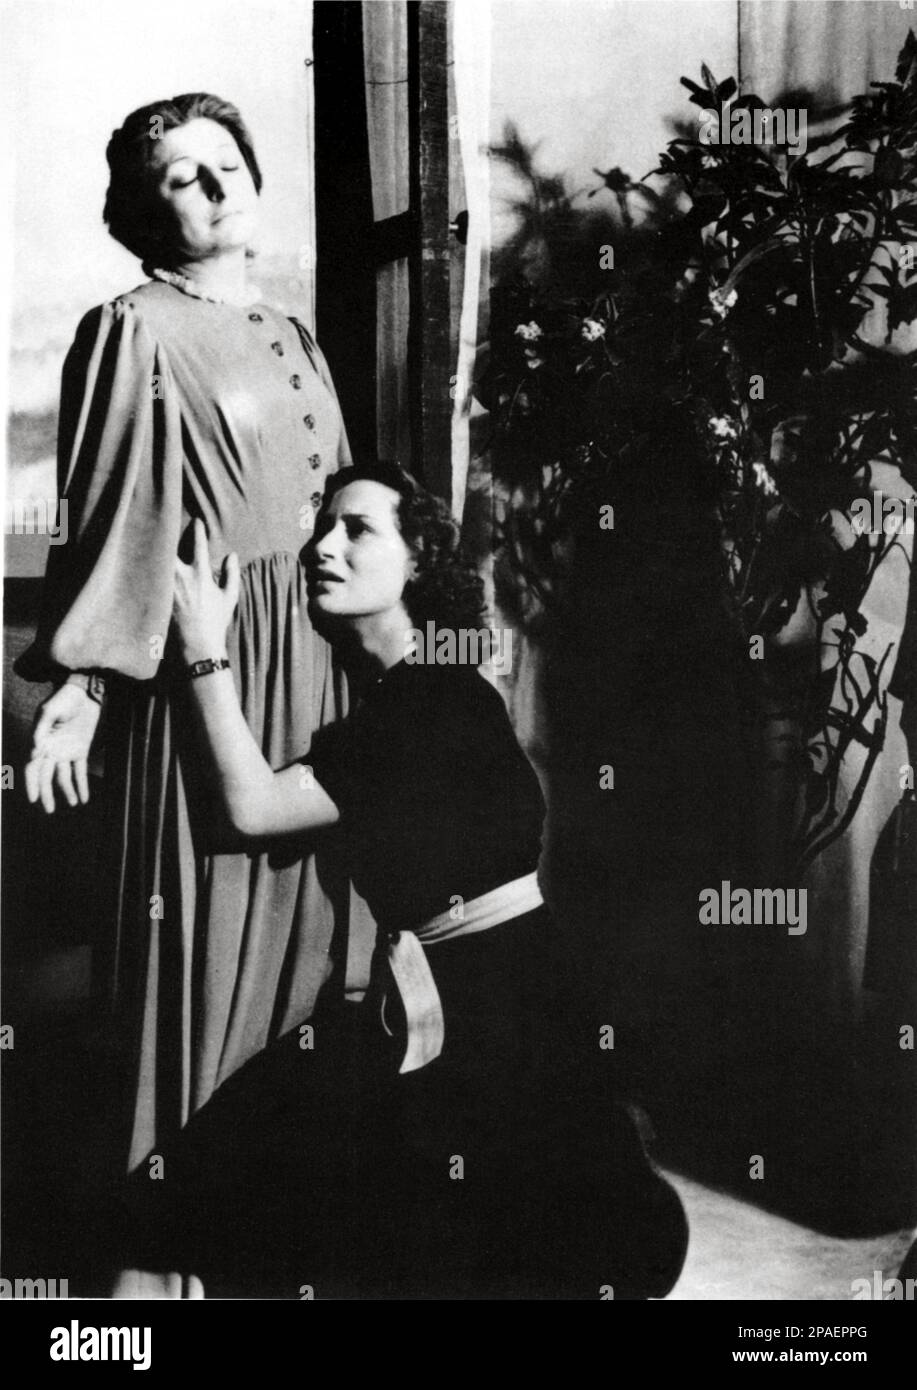 1942, ITALIA : l'attrice PAOLA BORBONI ( 1900 - 1995 ) Con ELENA ZARESCHI in LA vita che ti DIEDI del drammaturgo e premio Nobel LUIGI PIRANDELLO - ATTORE - DRAMMATURGO - COMMEDIOGRAFO - LETTERATURA - letteratura - drammaturgo - TEATRO - TEATRO - TEATRO - COMMEDIOGRAFO - abbraccio - abbaccio - dramma - dramma ---- ARCHIVIO GBB Foto Stock